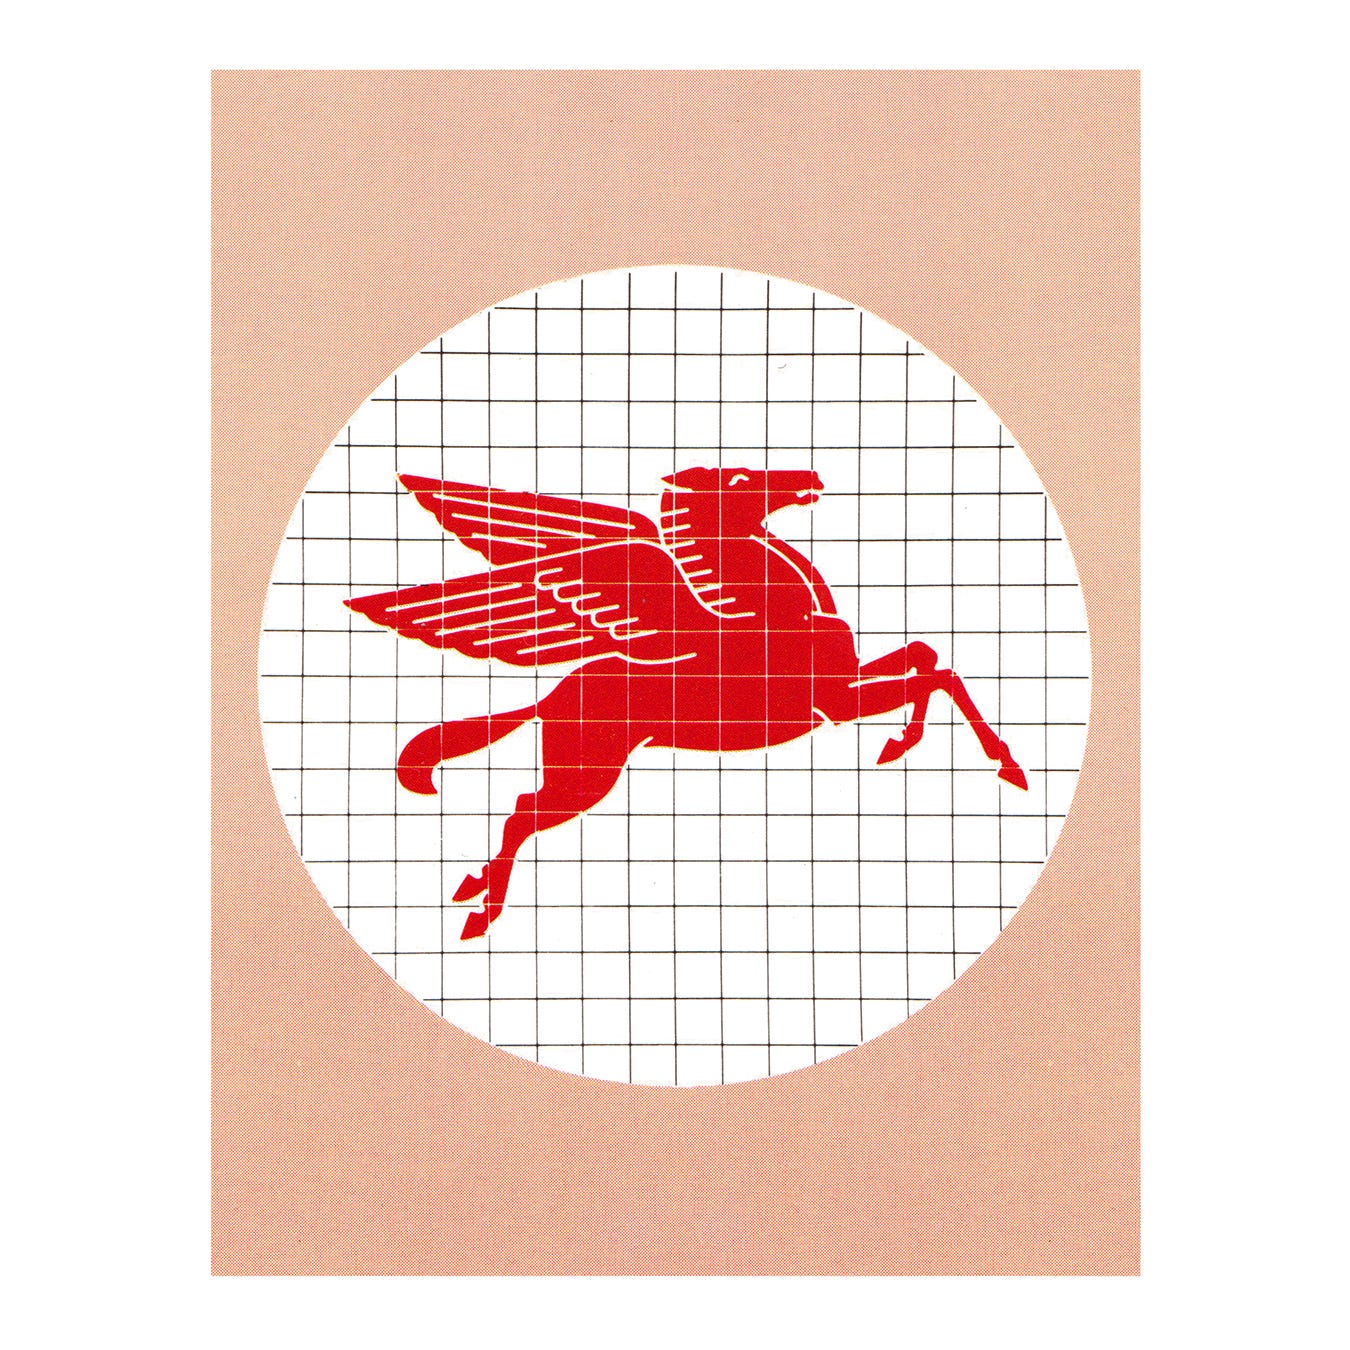 Mobil's flying horse logo 1966